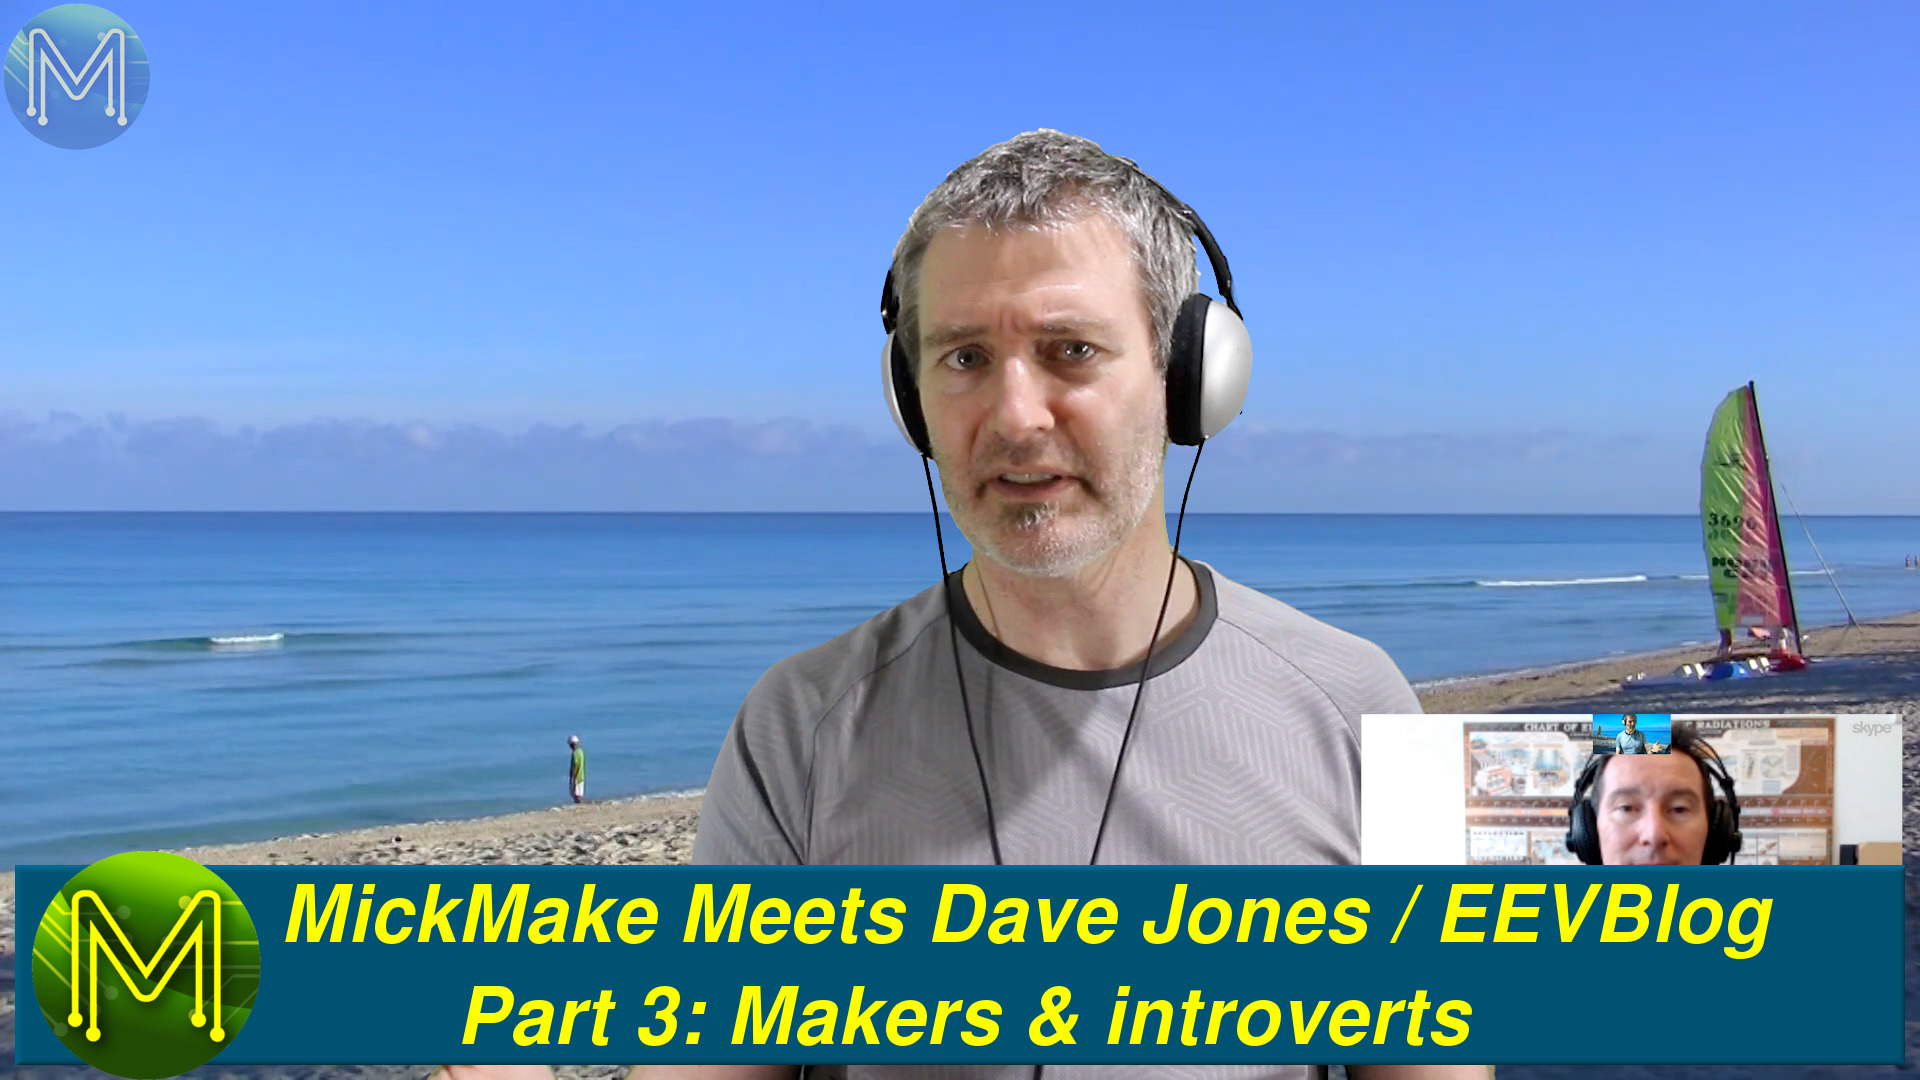 MickMake Meets: Dave Jones / EEVBlog - Part 3: Makers & introverts